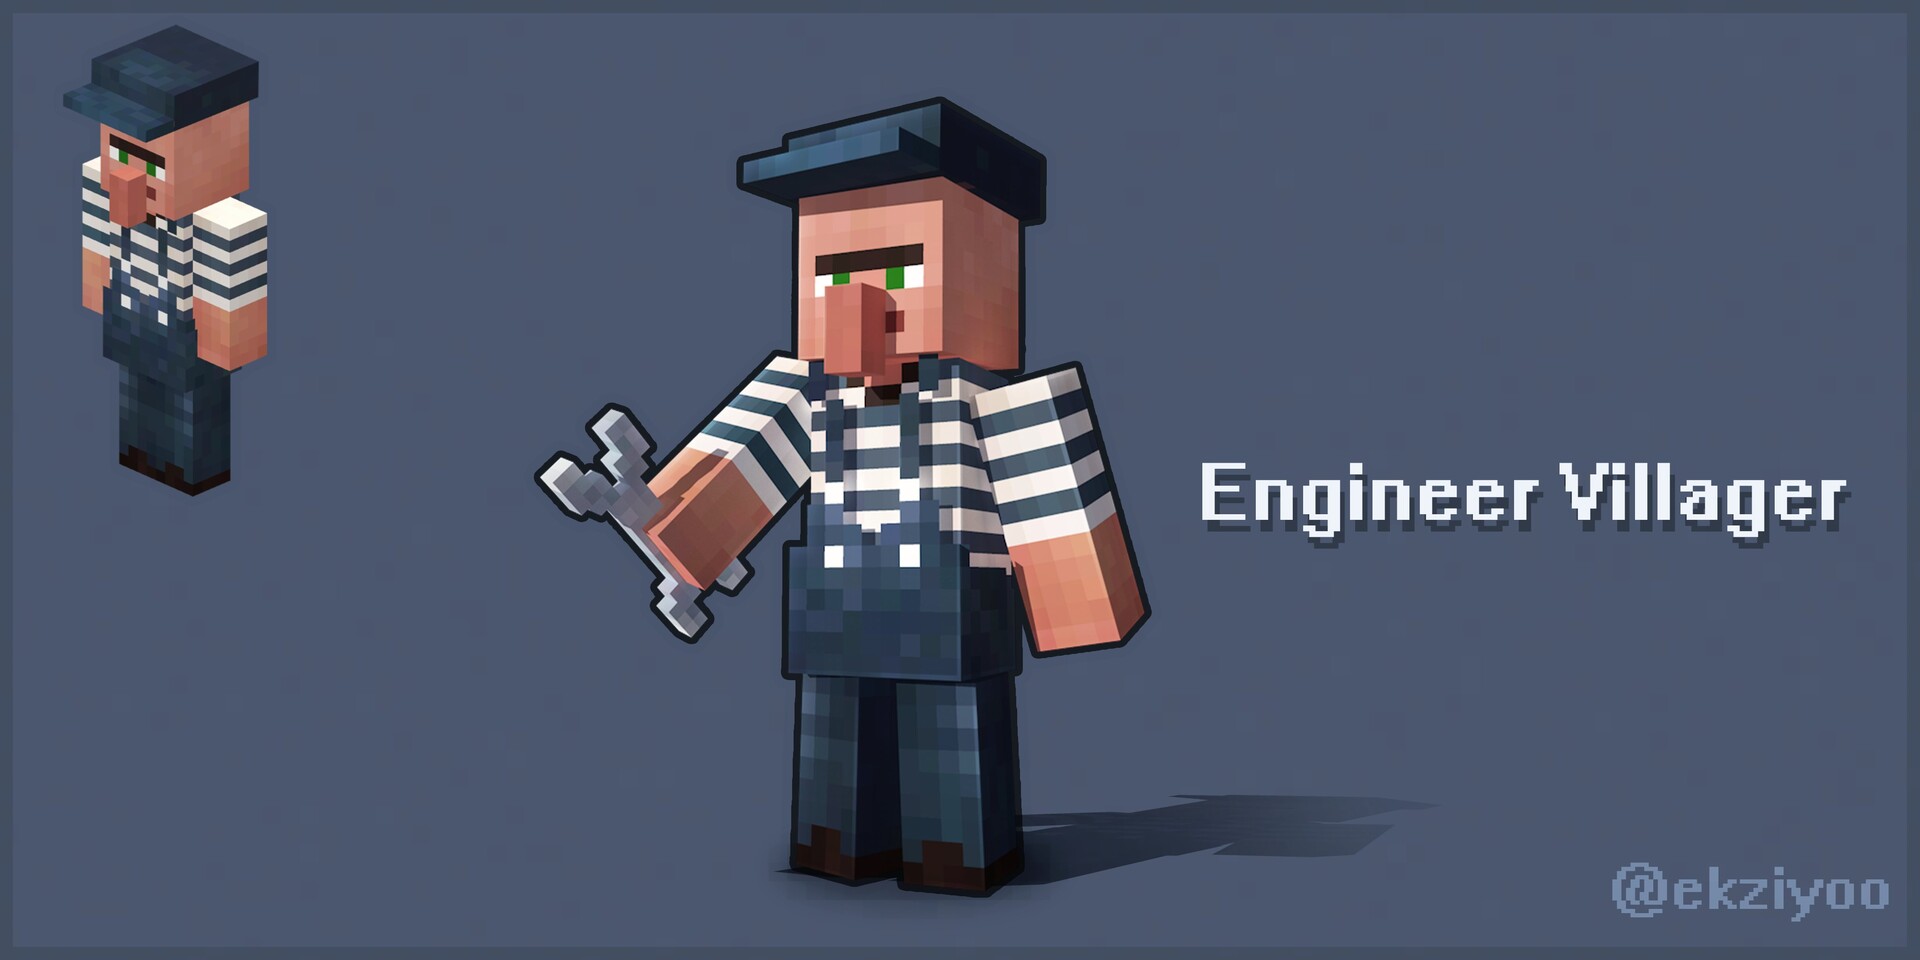 ArtStation - Minecraft Engineer Villager